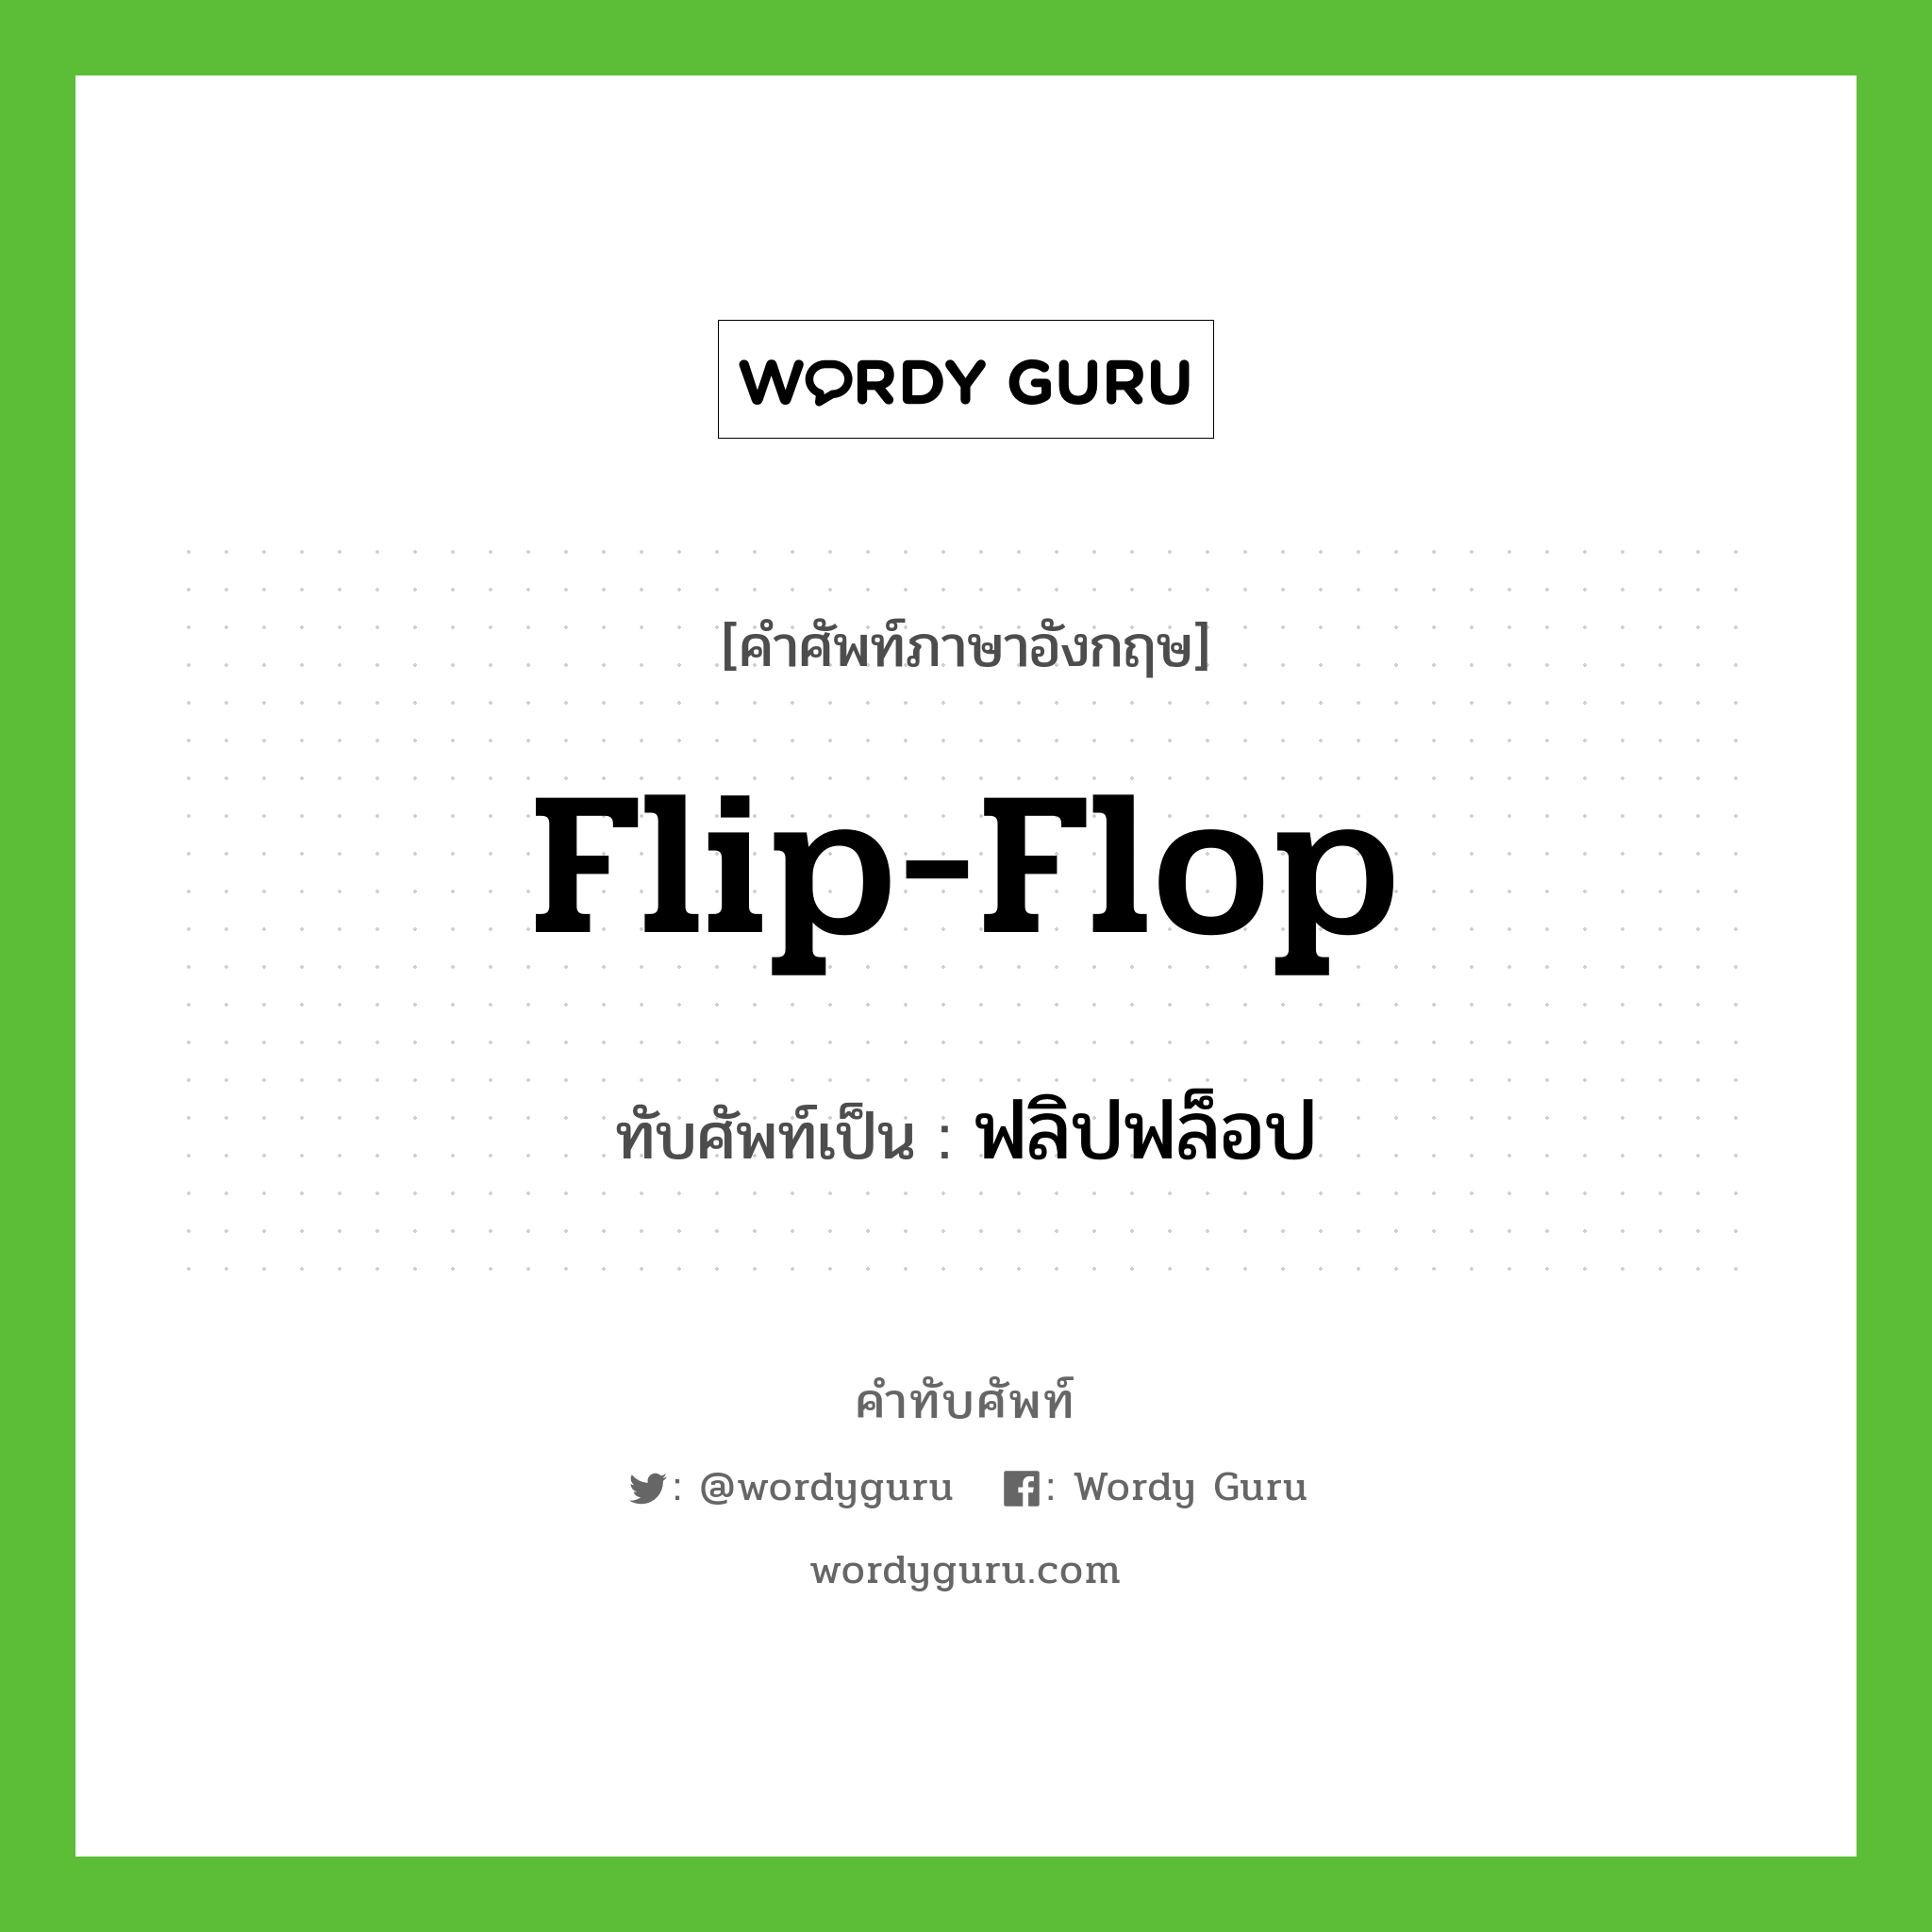 flip-flop เขียนเป็นคำไทยว่าอะไร?, คำศัพท์ภาษาอังกฤษ flip-flop ทับศัพท์เป็น ฟลิปฟล็อป